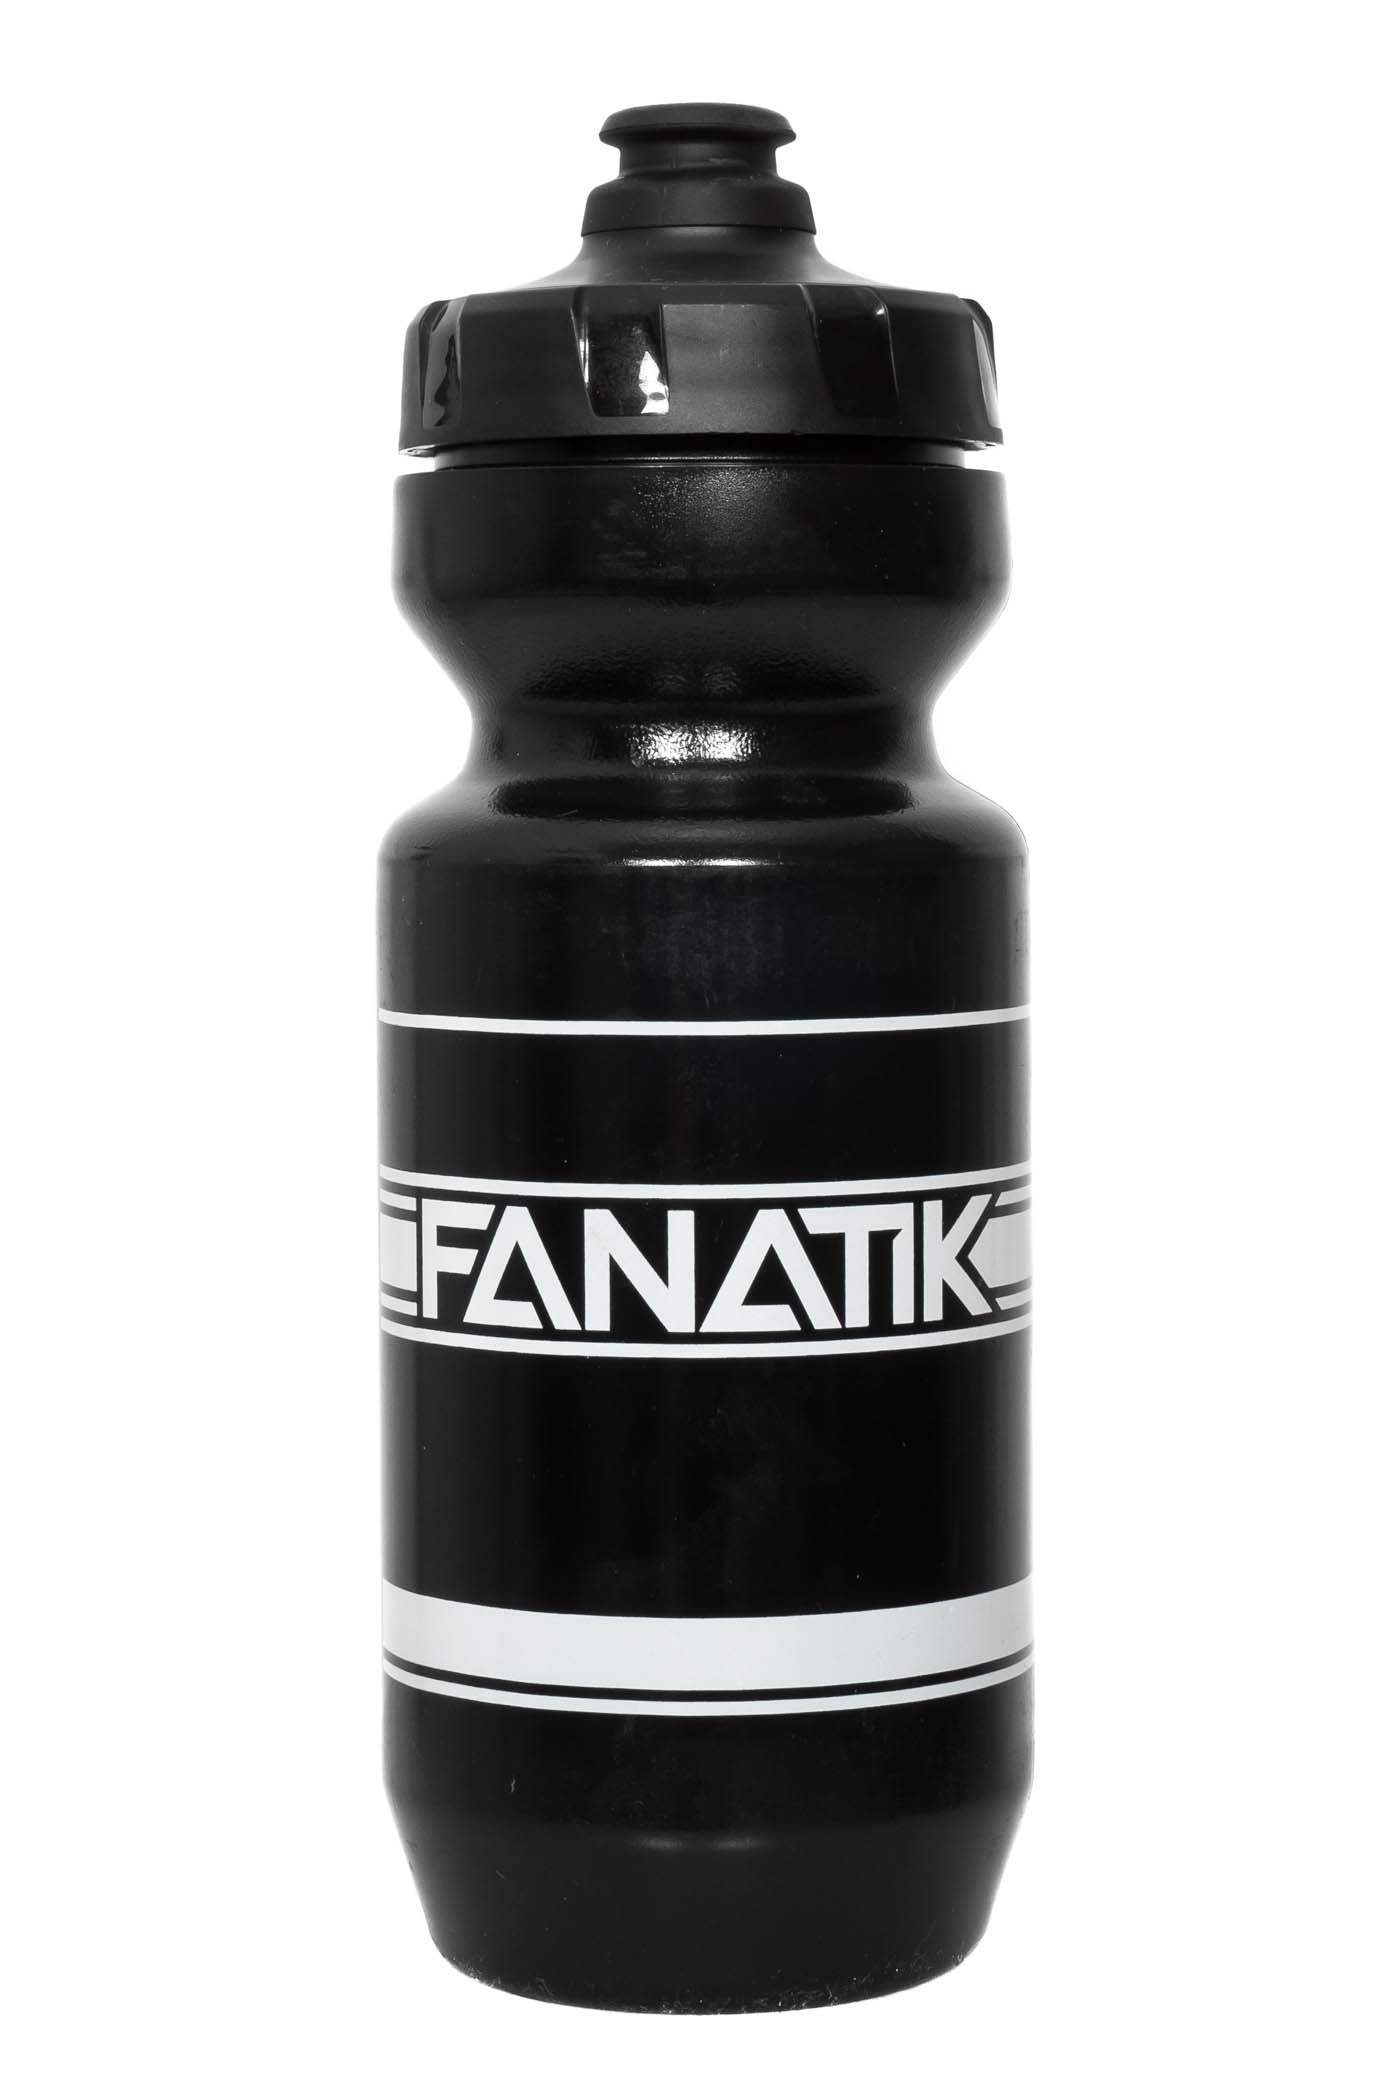 Fanatik Purist Water Bottle - Fanatik Bike Co.